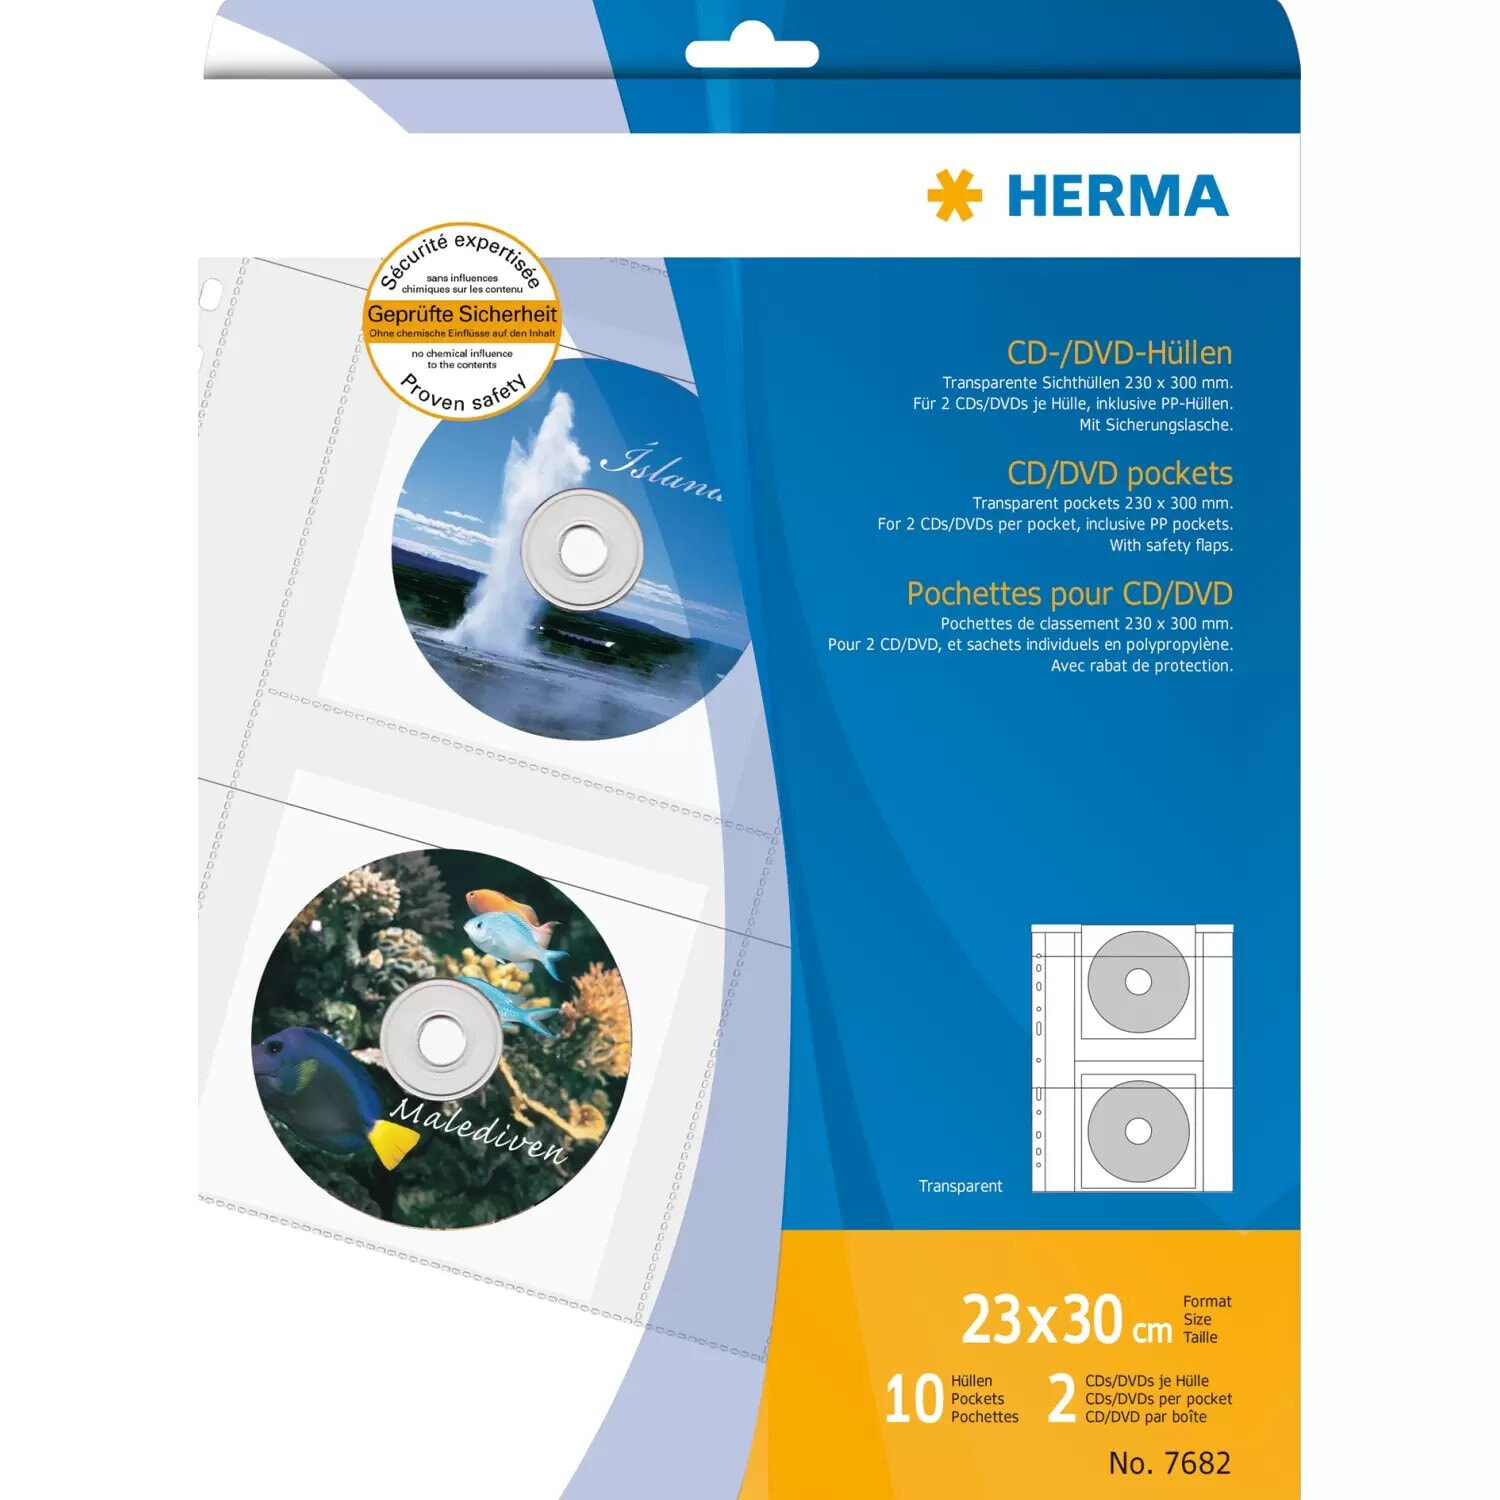 HERMA 7682 чехол для носителей данных Кейс для дисков UMD Прозрачный